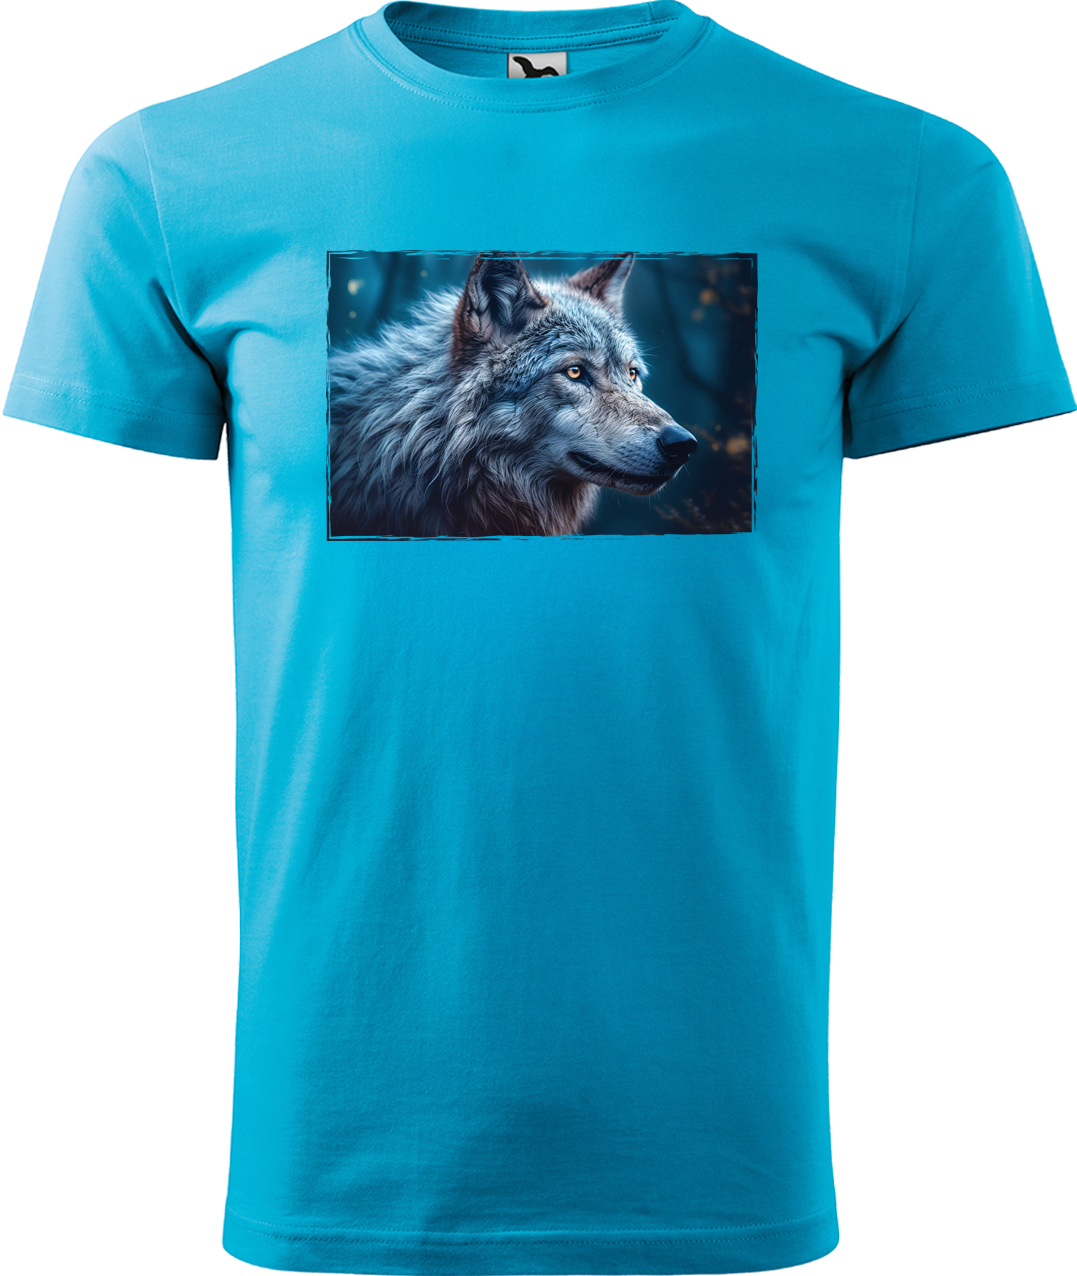 Pánské tričko s vlkem - Modrý vlk Velikost: M, Barva: Tyrkysová (44)